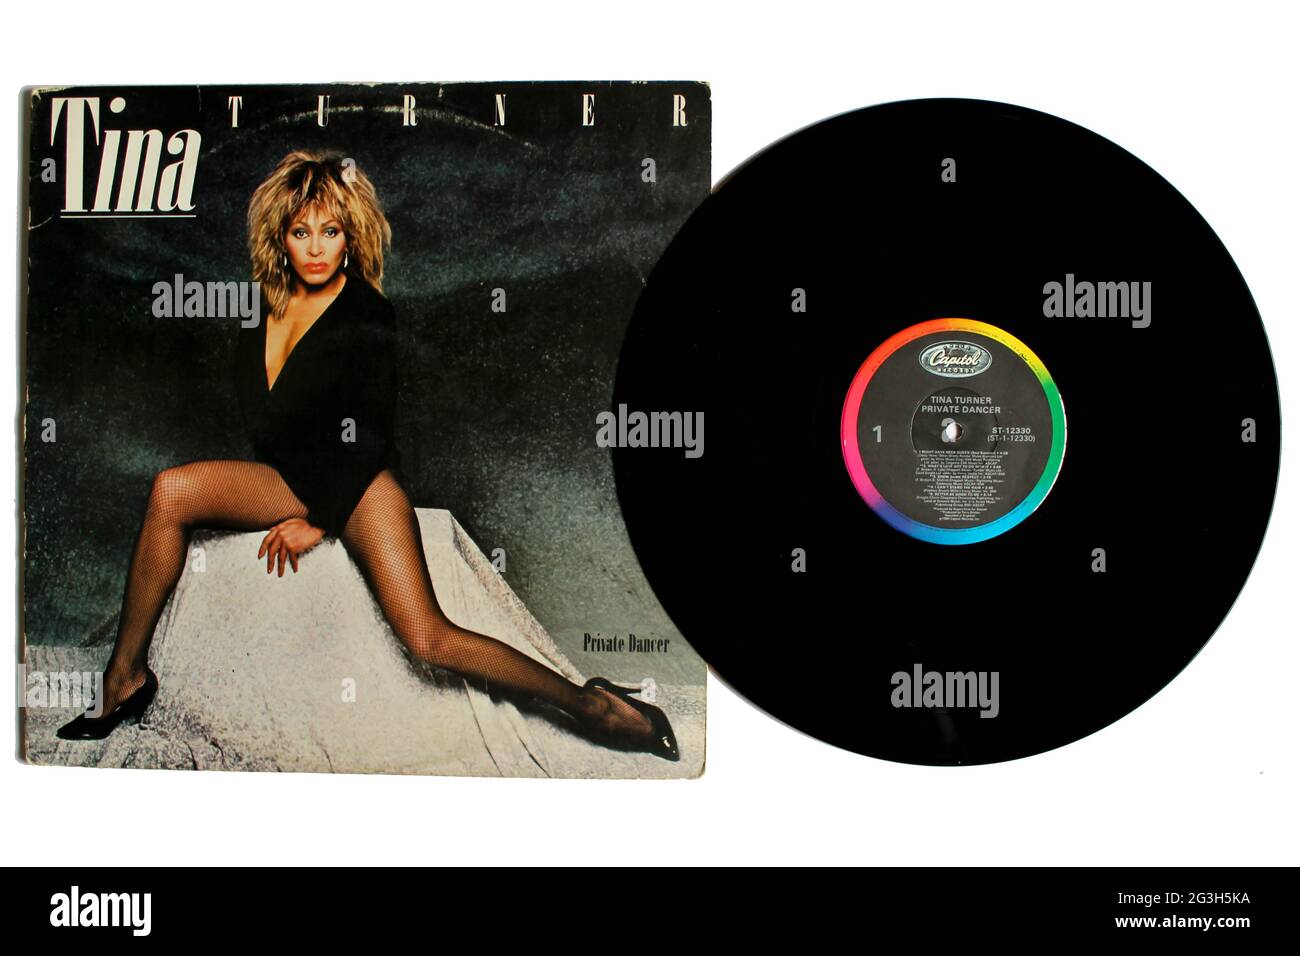 Pop-, Rock- und RnB-Künstlerin, Tina Turner-Musikalbum auf Vinyl-Schallplatte. Titel: Privates Dancer Albumcover Stockfoto